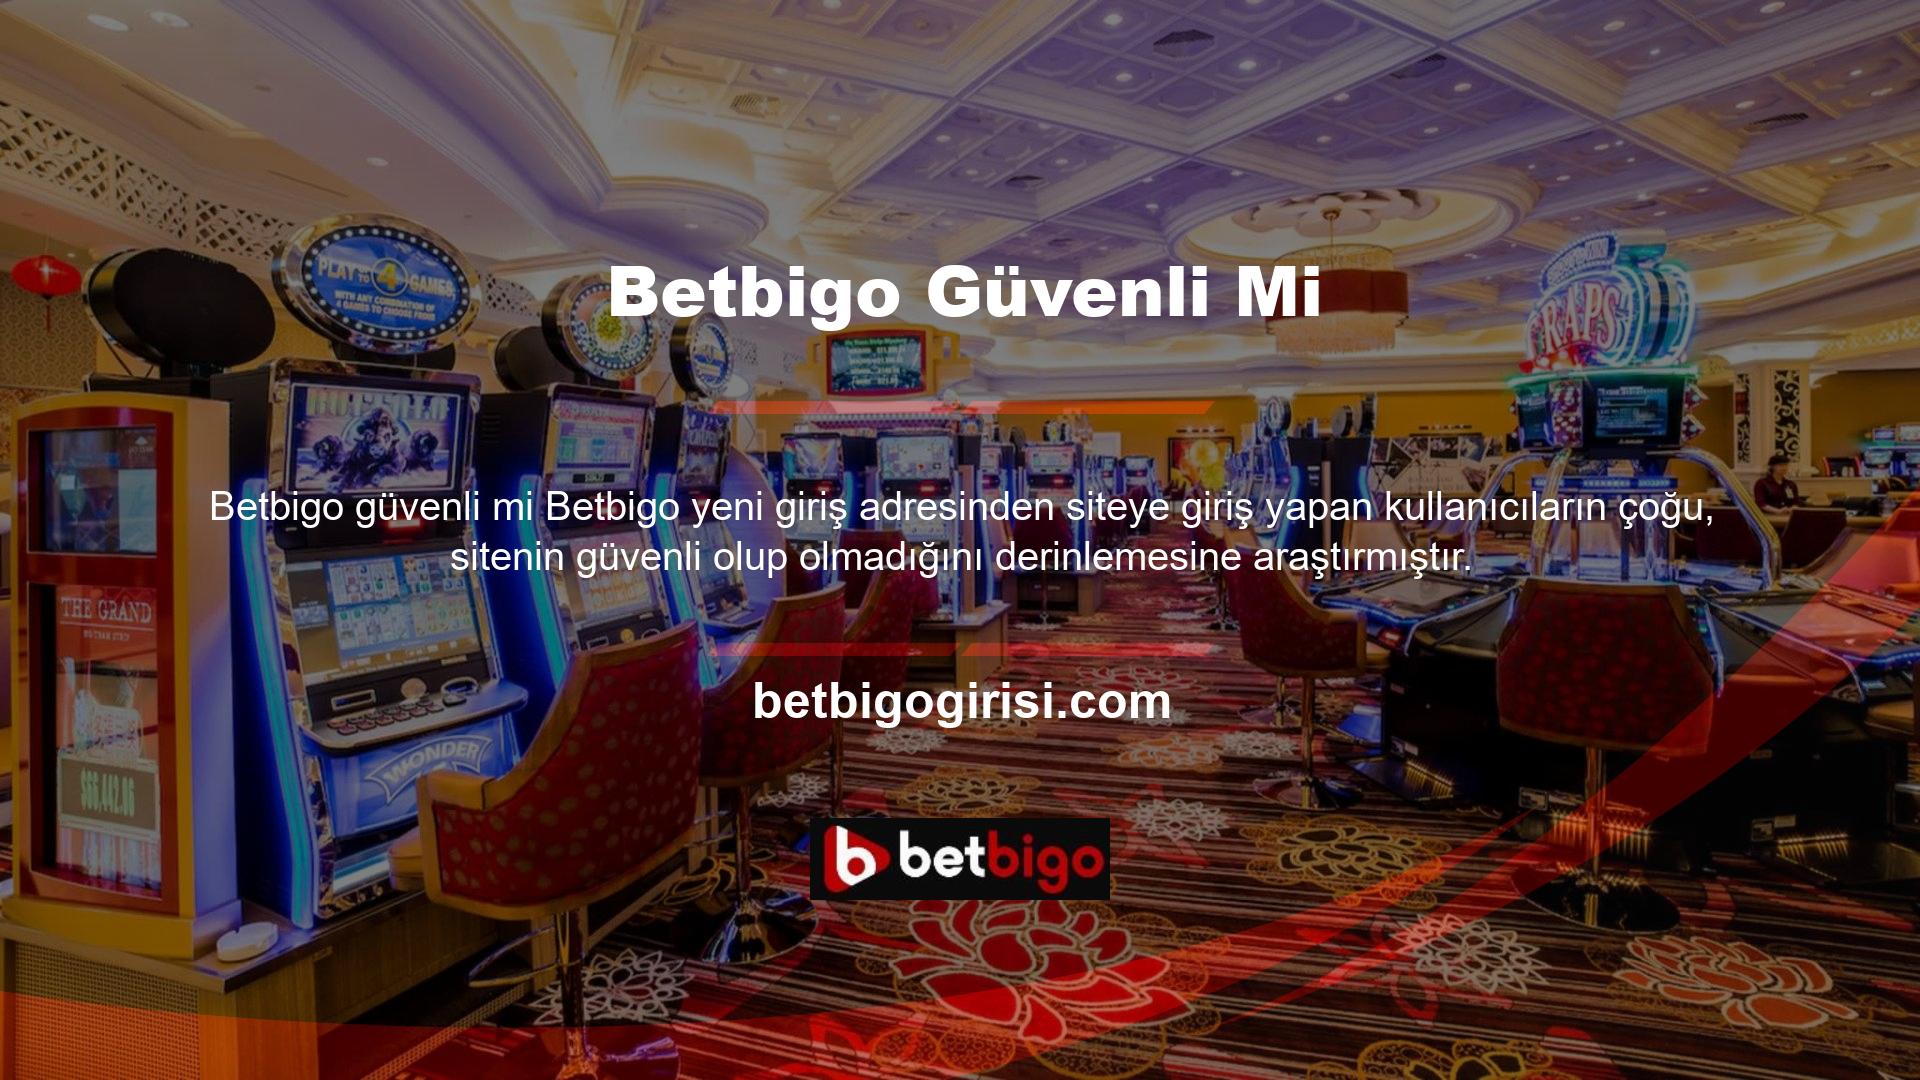 Betbigo sitesi son zamanlarda bahis piyasasının en güvenilir ve popüler sitelerinden biri haline gelmiştir